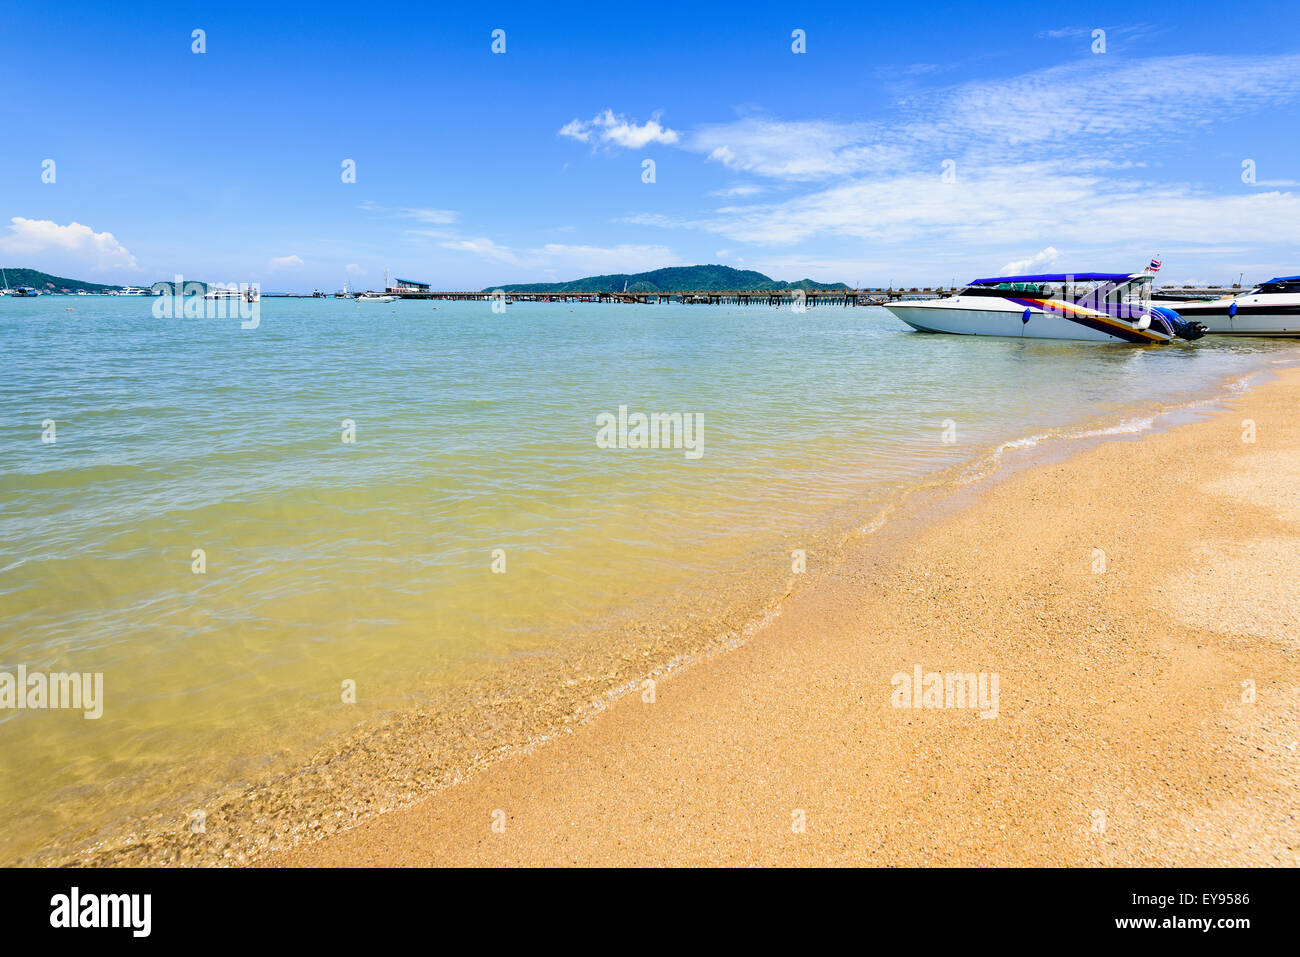 Spiaggia zona porto turistico per il viaggio al mare presso la Chalong Bay e famose attrazioni nell'isola di Phuket, Tailandia Foto Stock